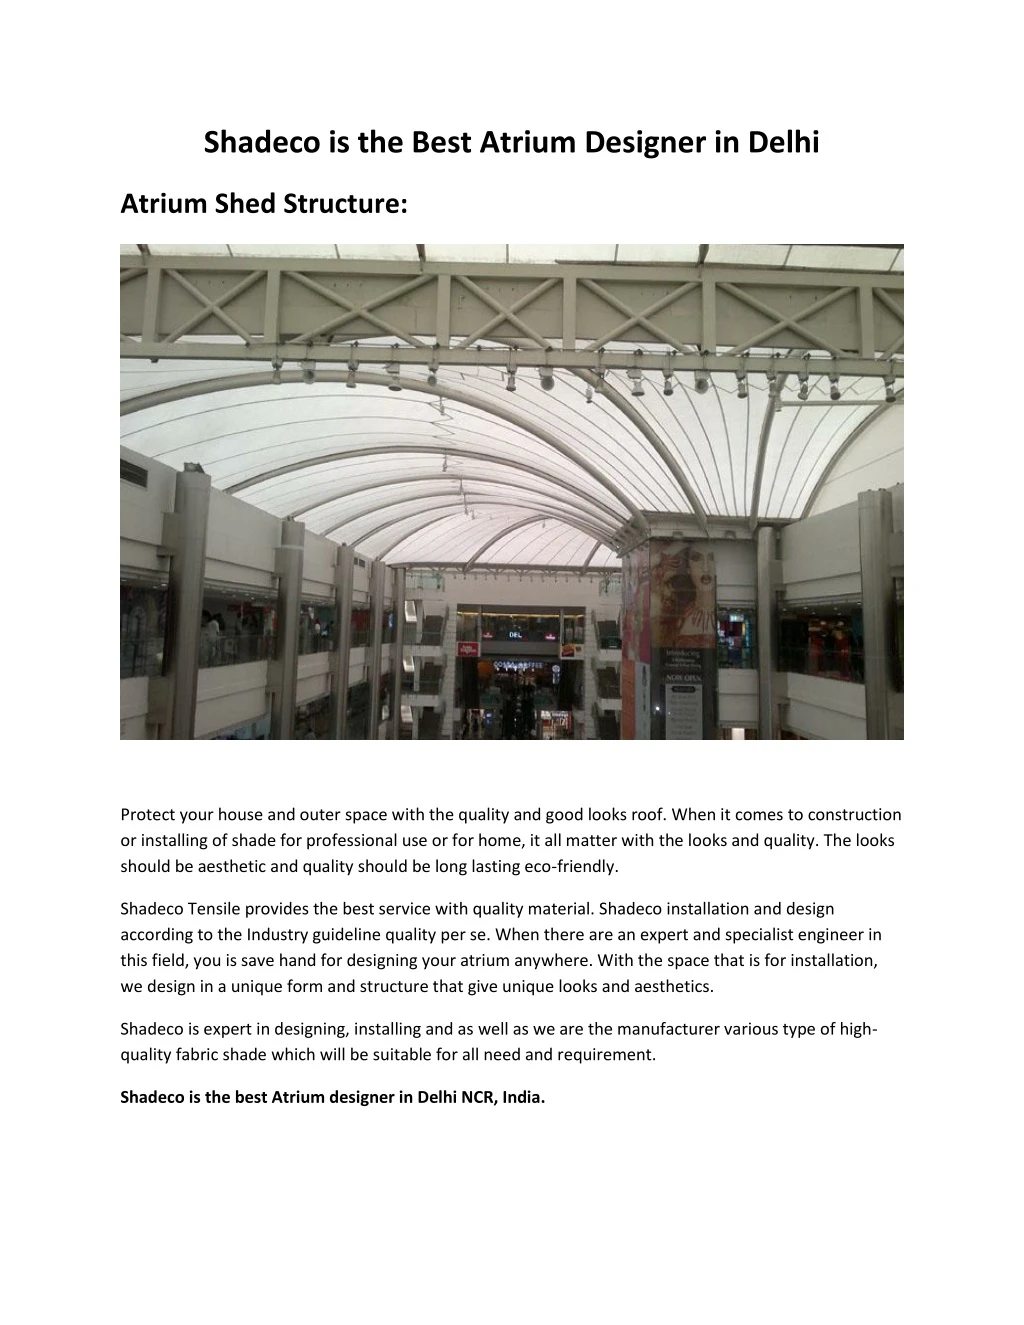 shadeco is the best atrium designer in delhi